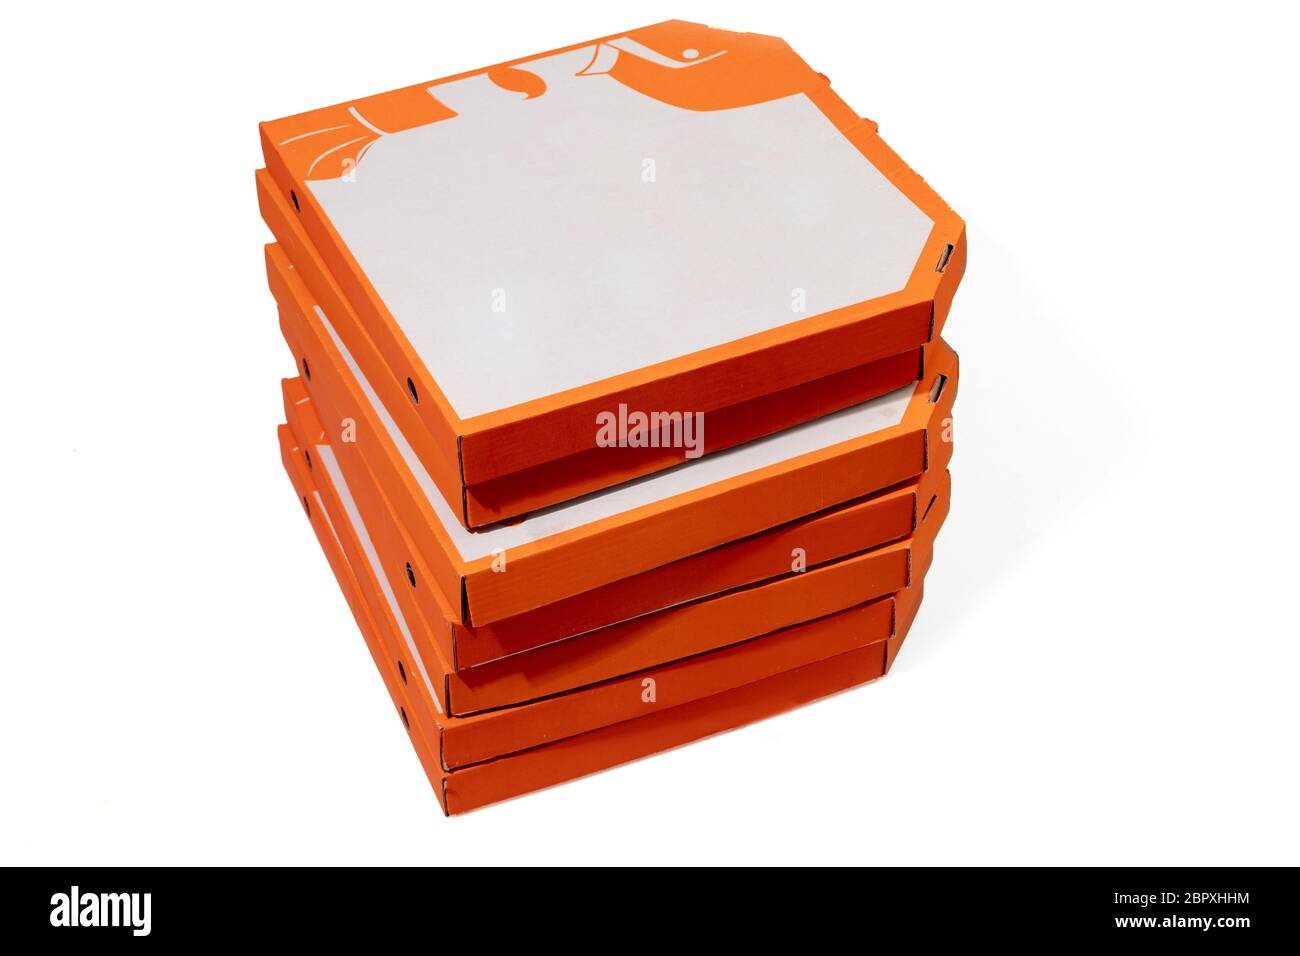 Primer plano de cajas de cartón naranja para pizza aisladas sobre fondo blanco de estudio con copyspace. Comida rápida y tradicional y nutrición, embalaje de entrega, cajas para el envío, transporte. Foto de stock